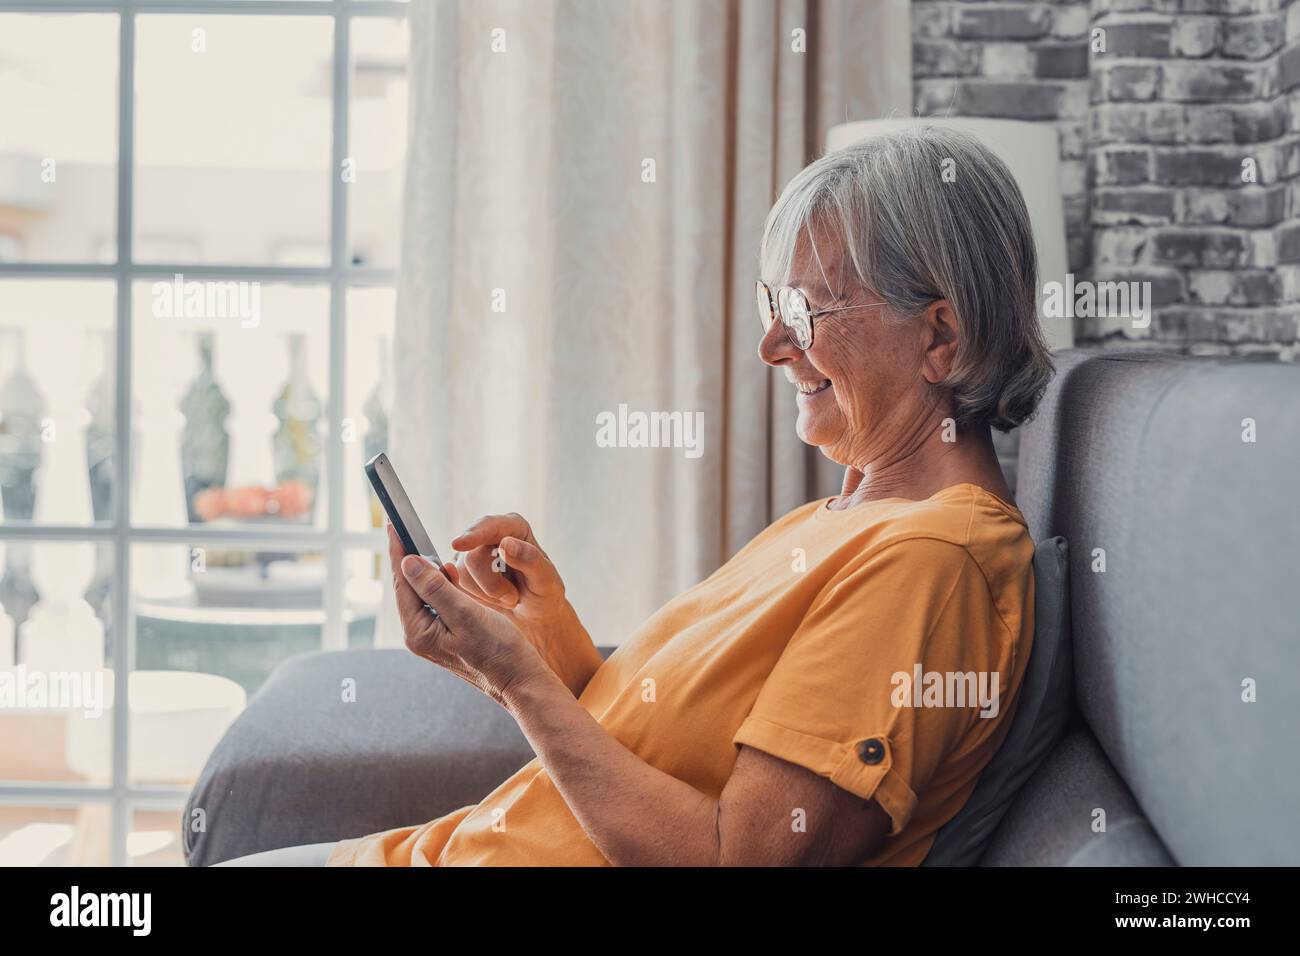 Lächelnde weiße Frau mittleren Alters sitzt neben der Couch im Wohnzimmer und surft drahtloses Internet am Telefon, glückliche moderne ältere Frau entspannen sich auf dem Boden zu Hause mit Smartphone-Gerät, älteres Technologiekonzept Stockfoto